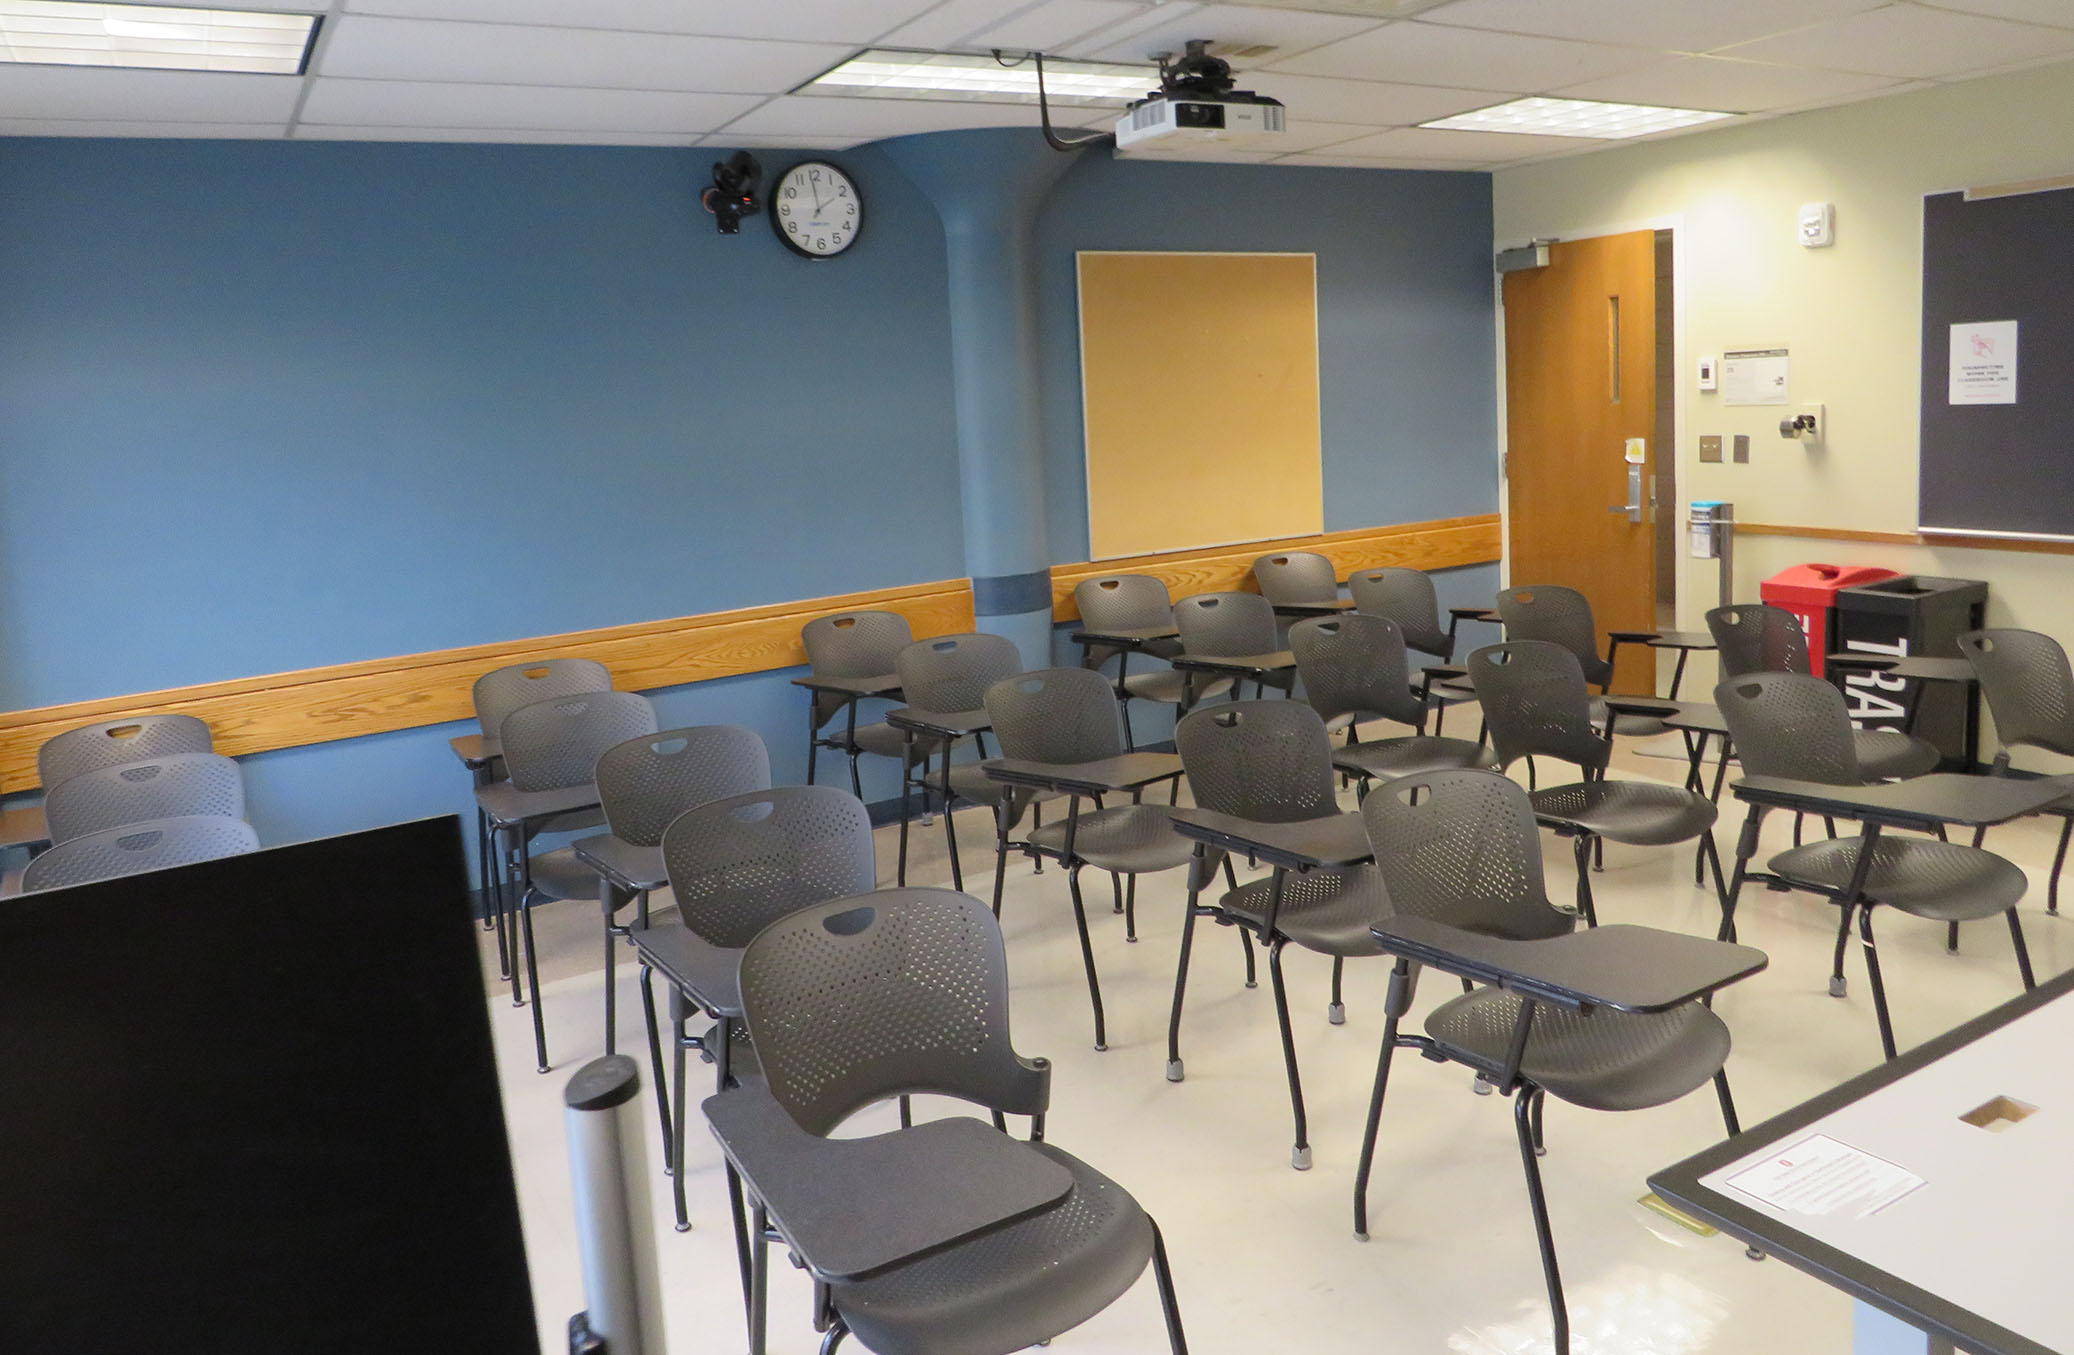 Enarson Classroom Building Room 214